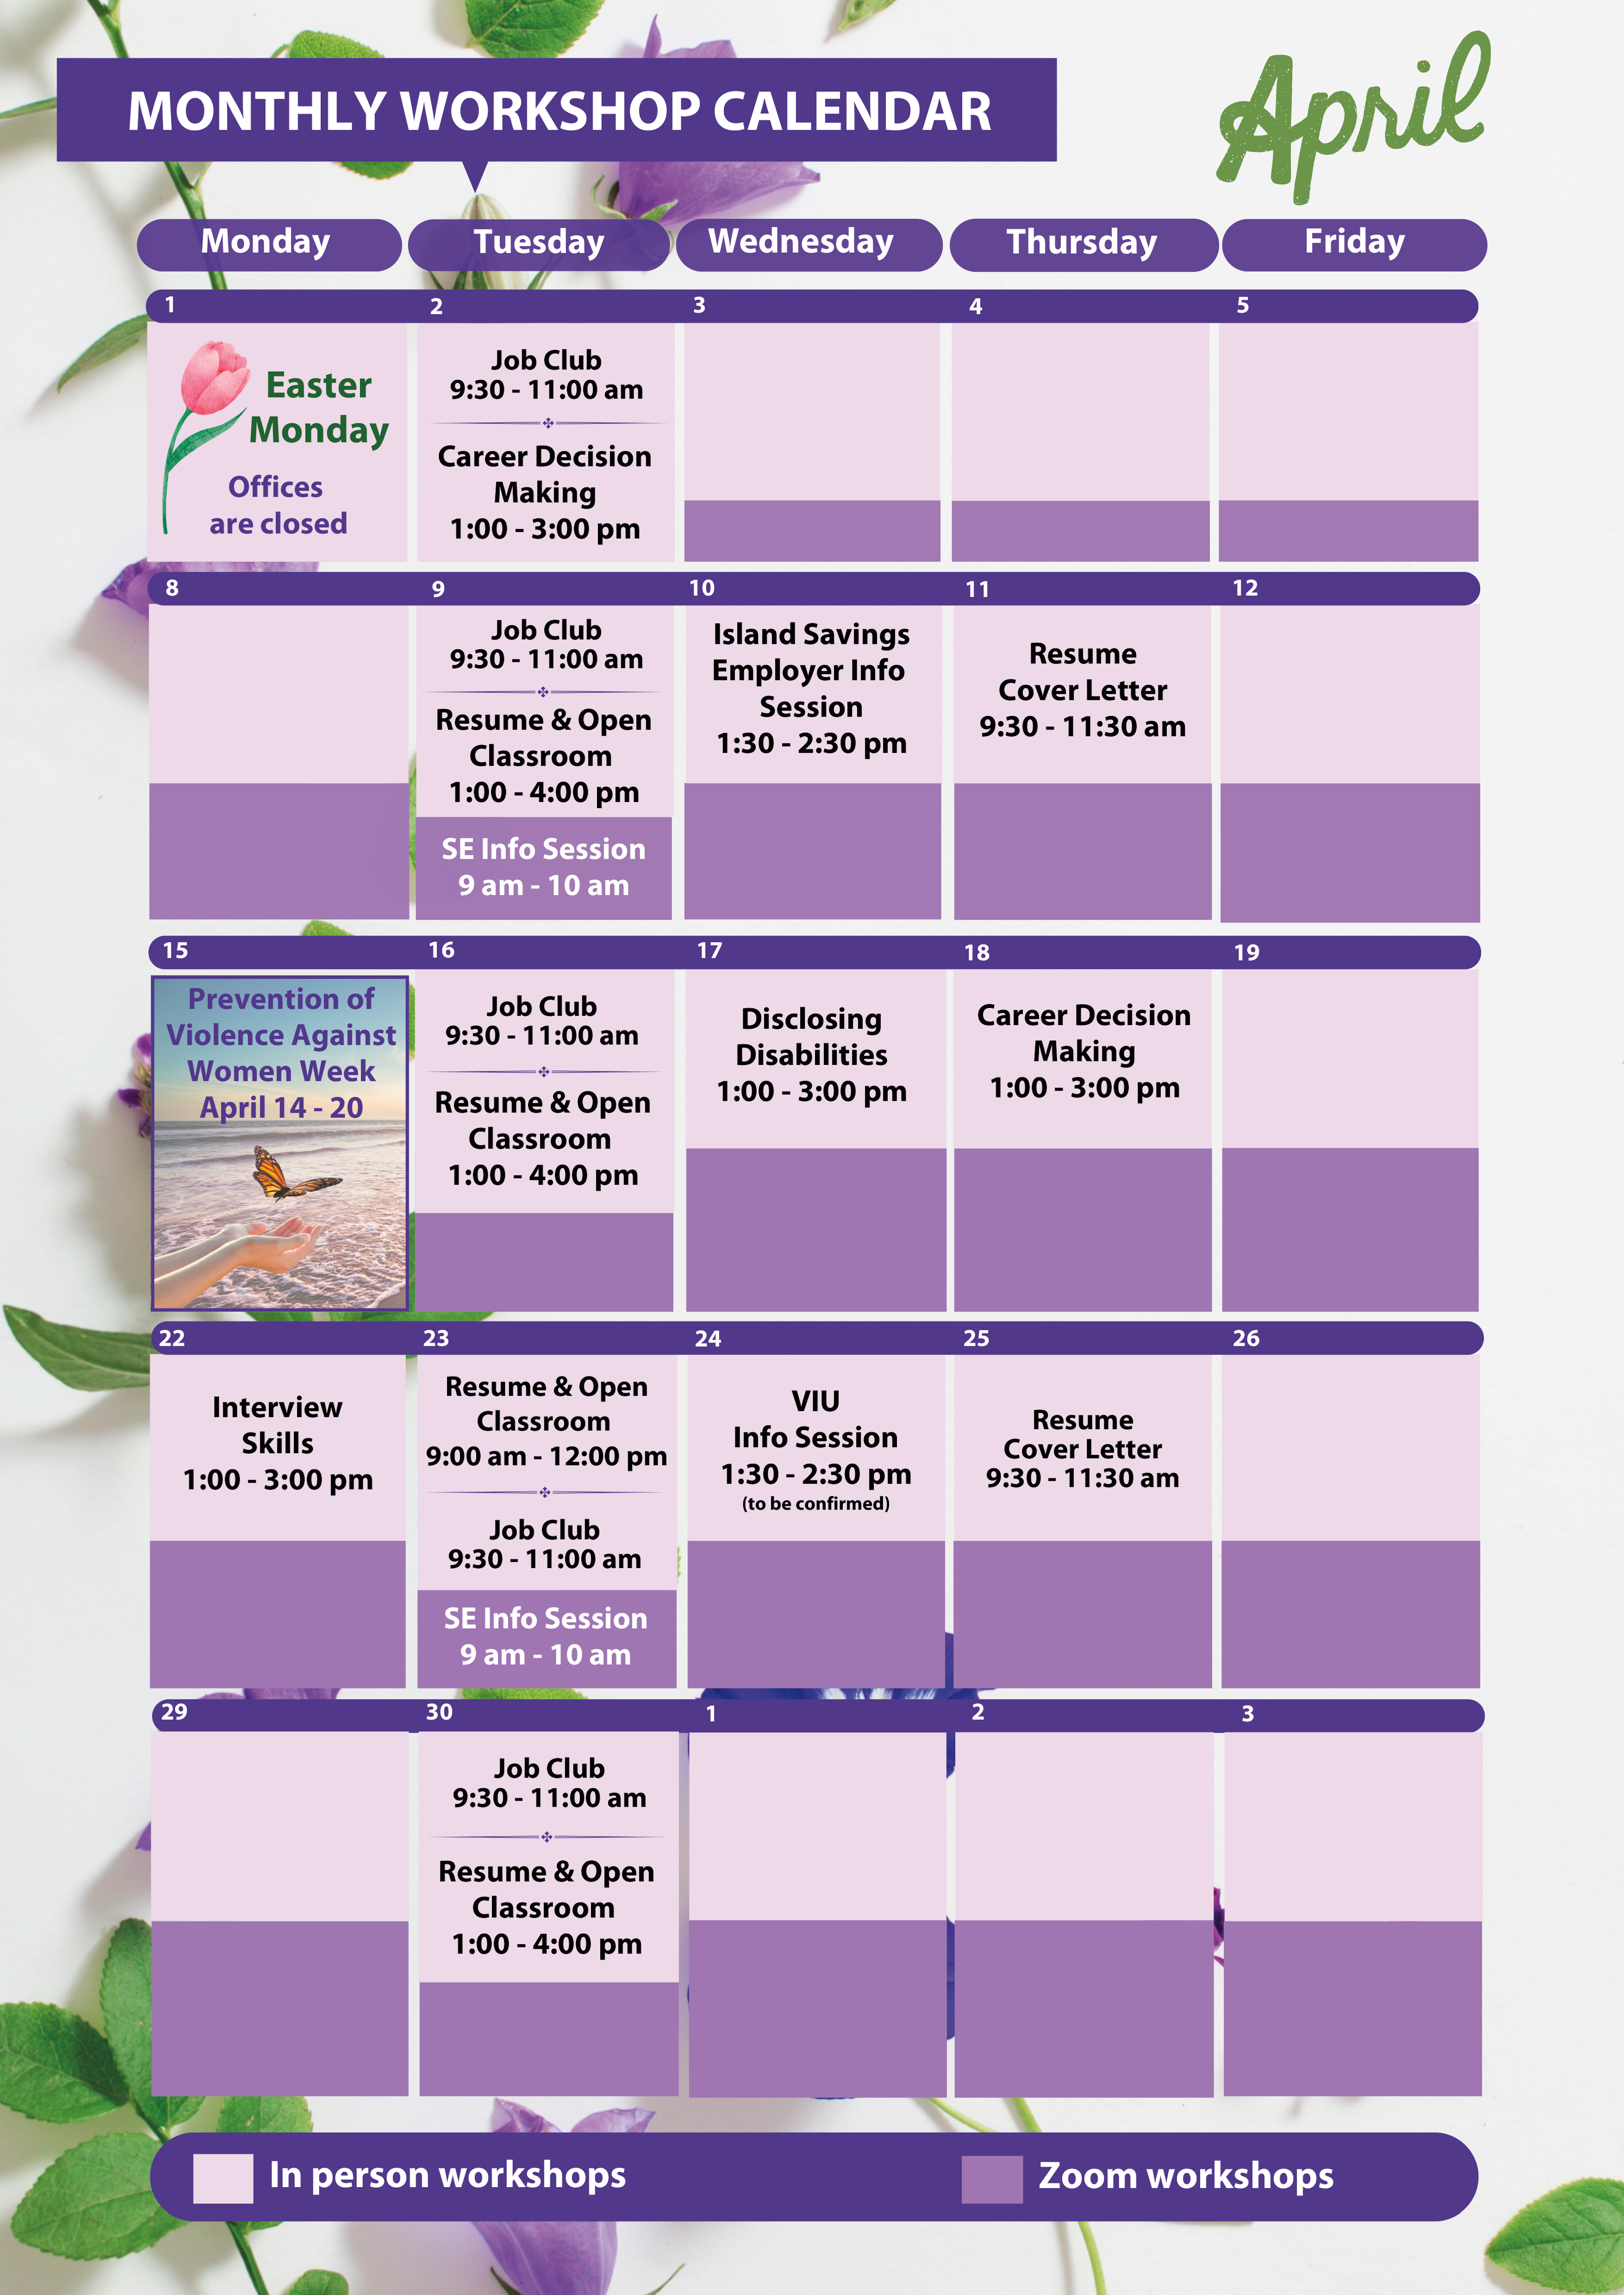 Calendar for workshops in January